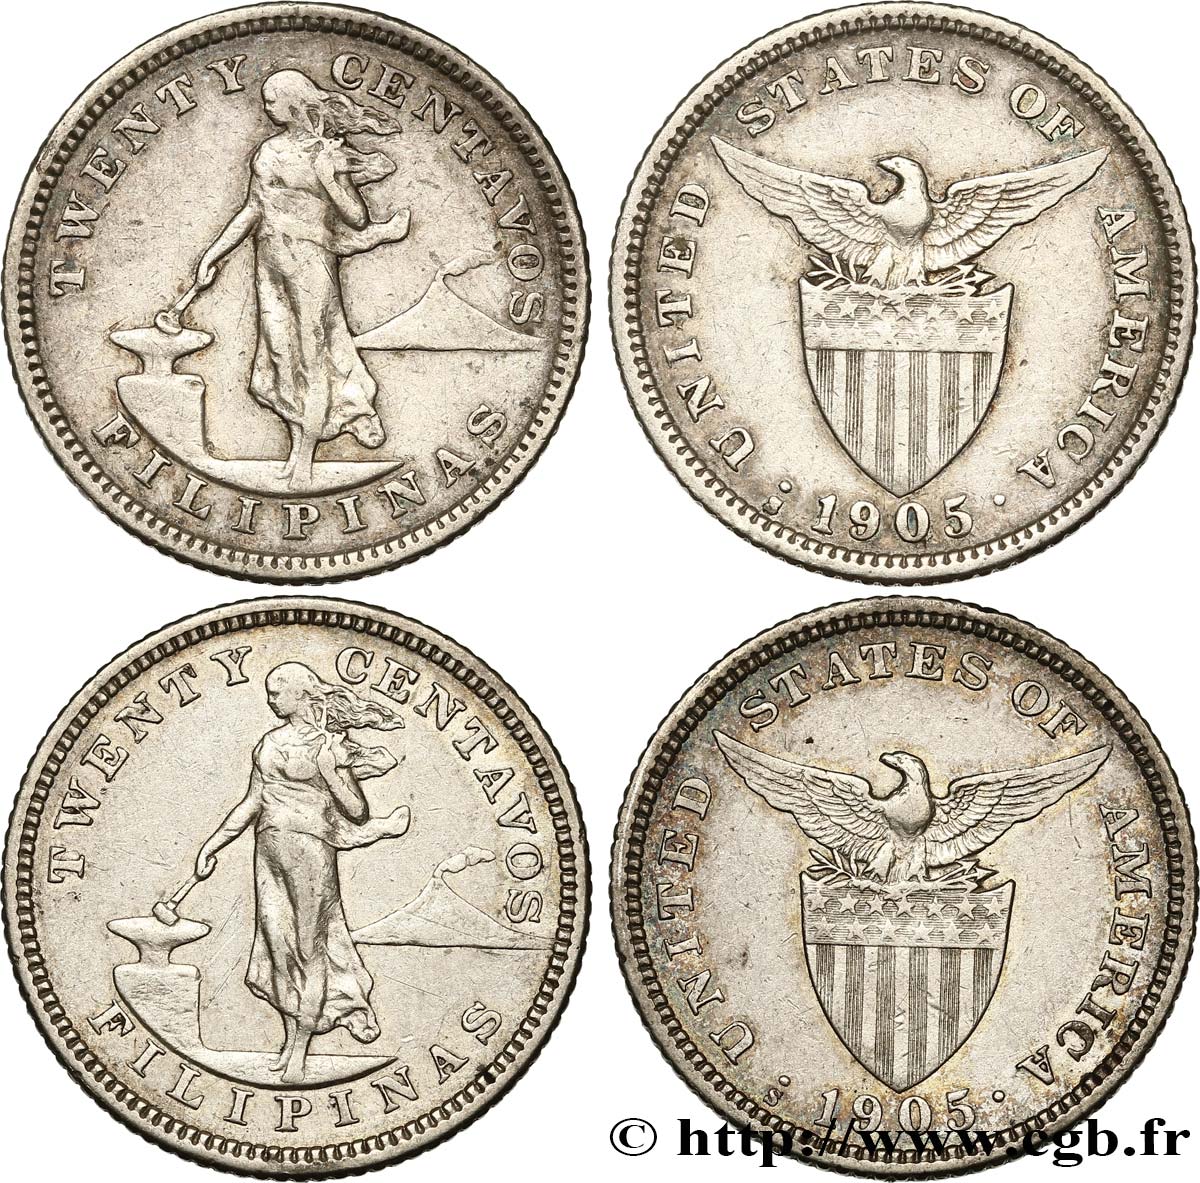 FILIPINAS Lot de 2 monnaies de 20 Centavos - Administration Américaine 1905 San Francisco - S MBC 